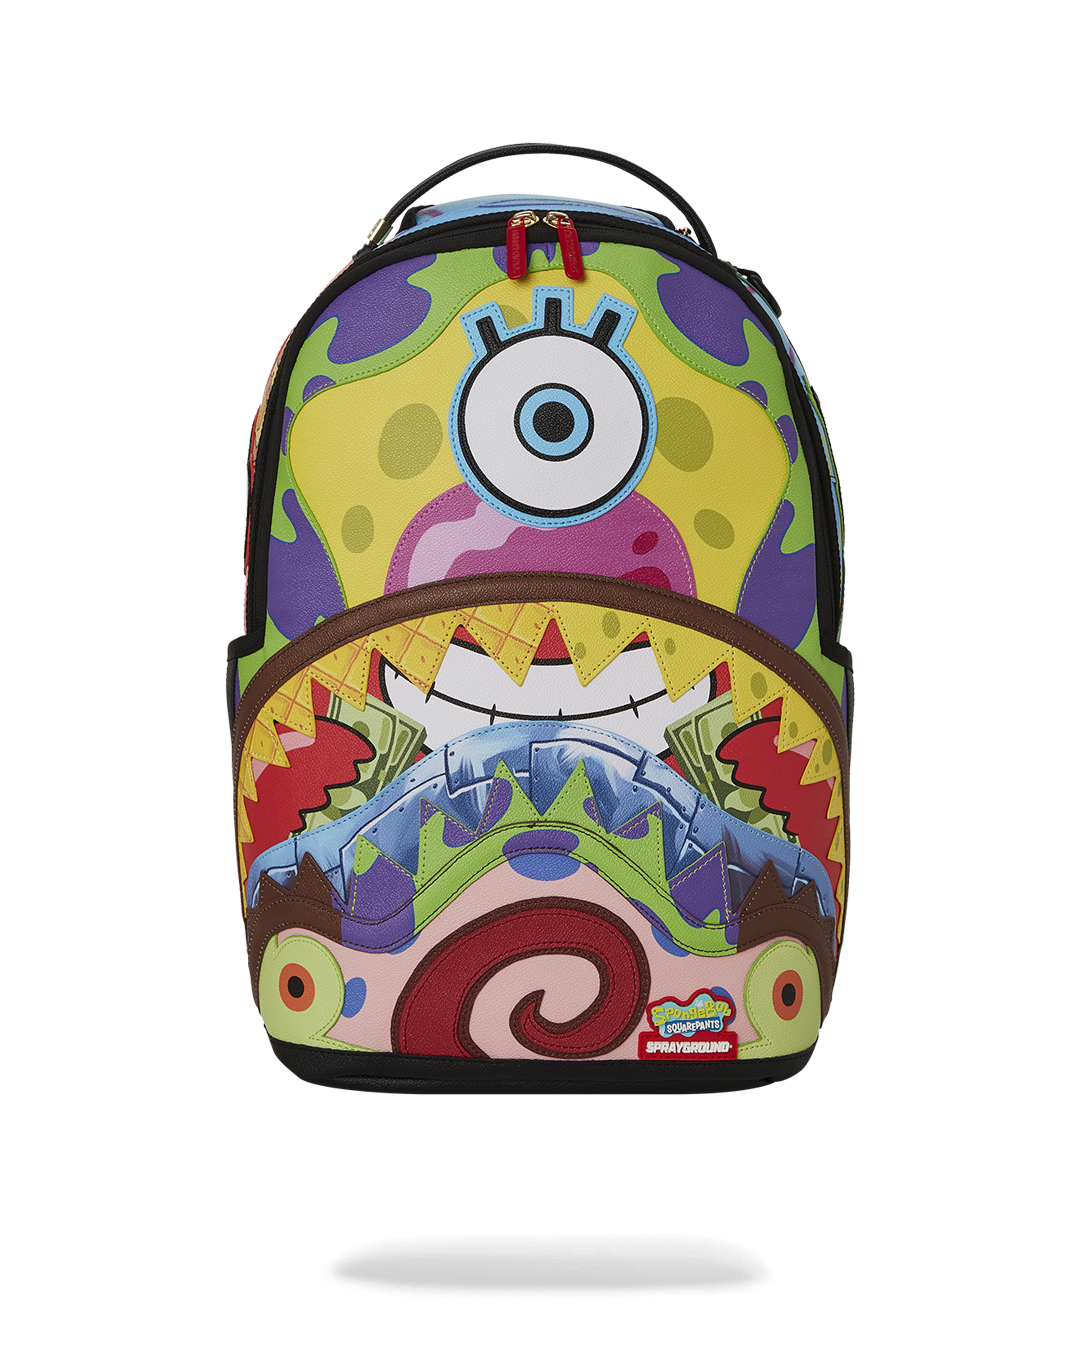 Sprayground - Spongebob Cut & Sew Backpack (Dlxv) - Clique Apparel